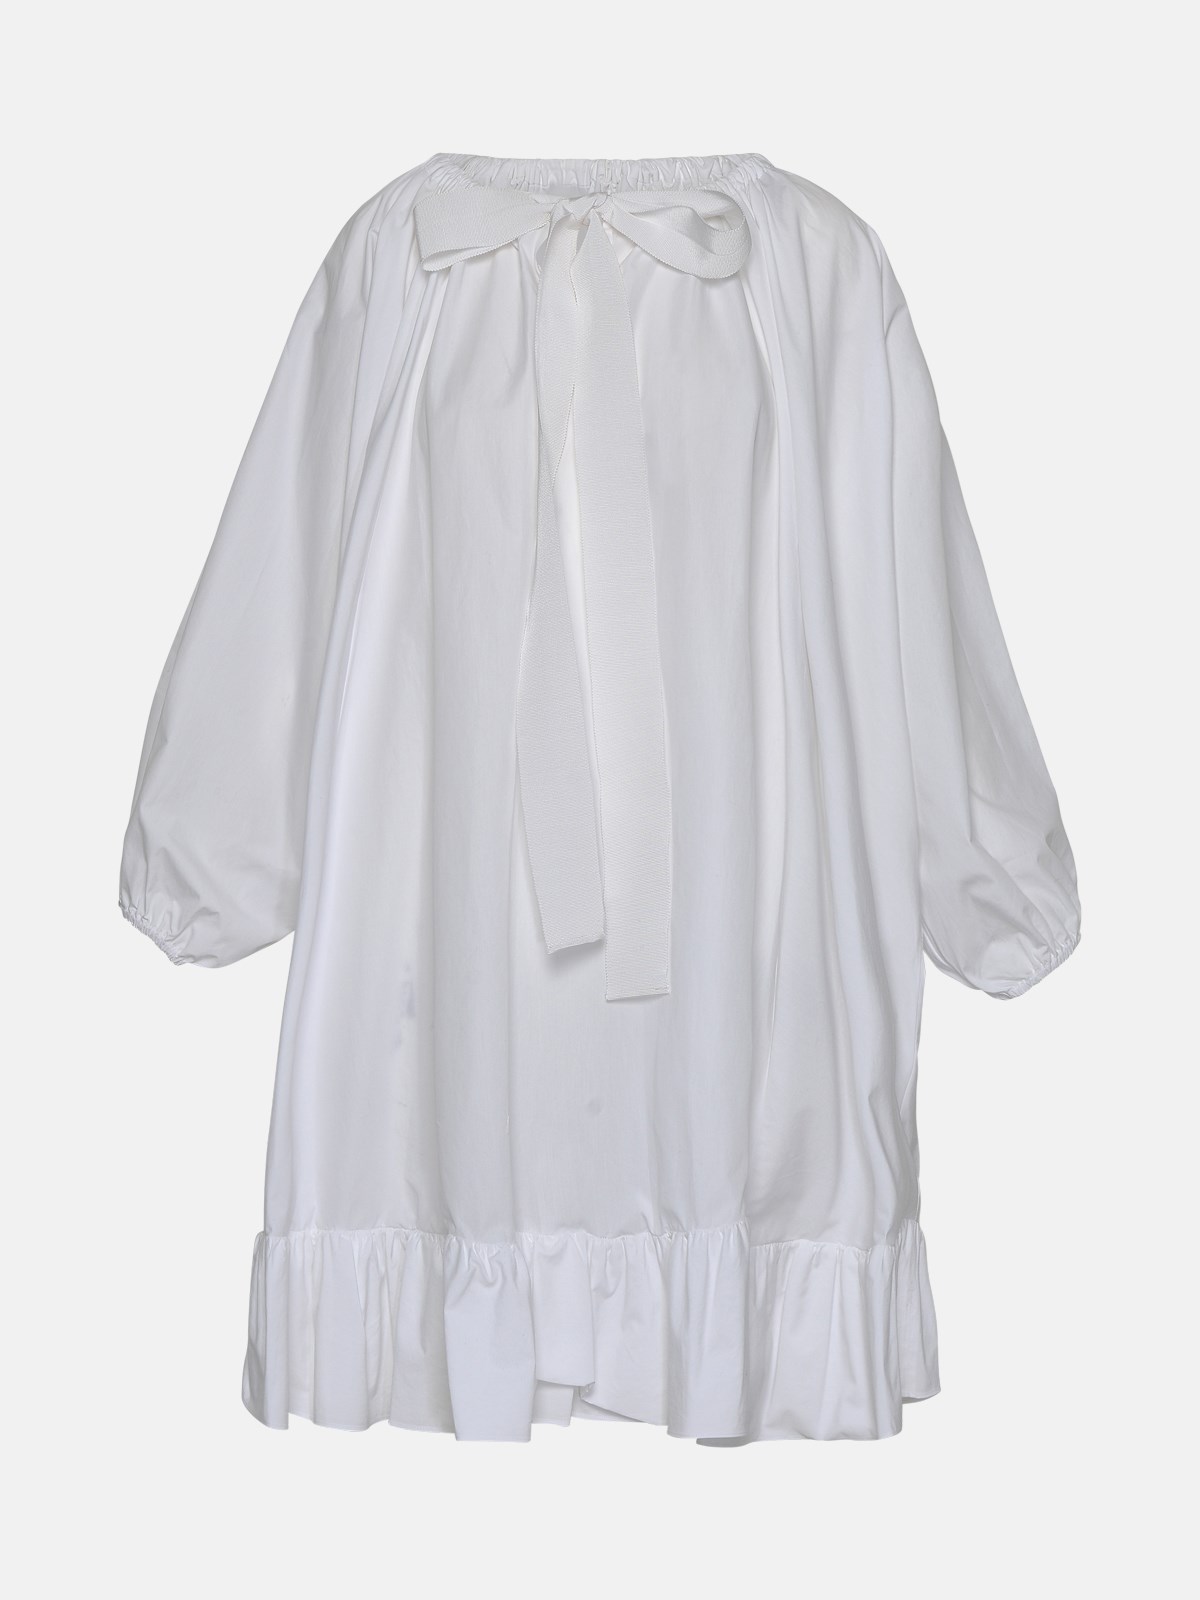 Patou White Cotton Dress